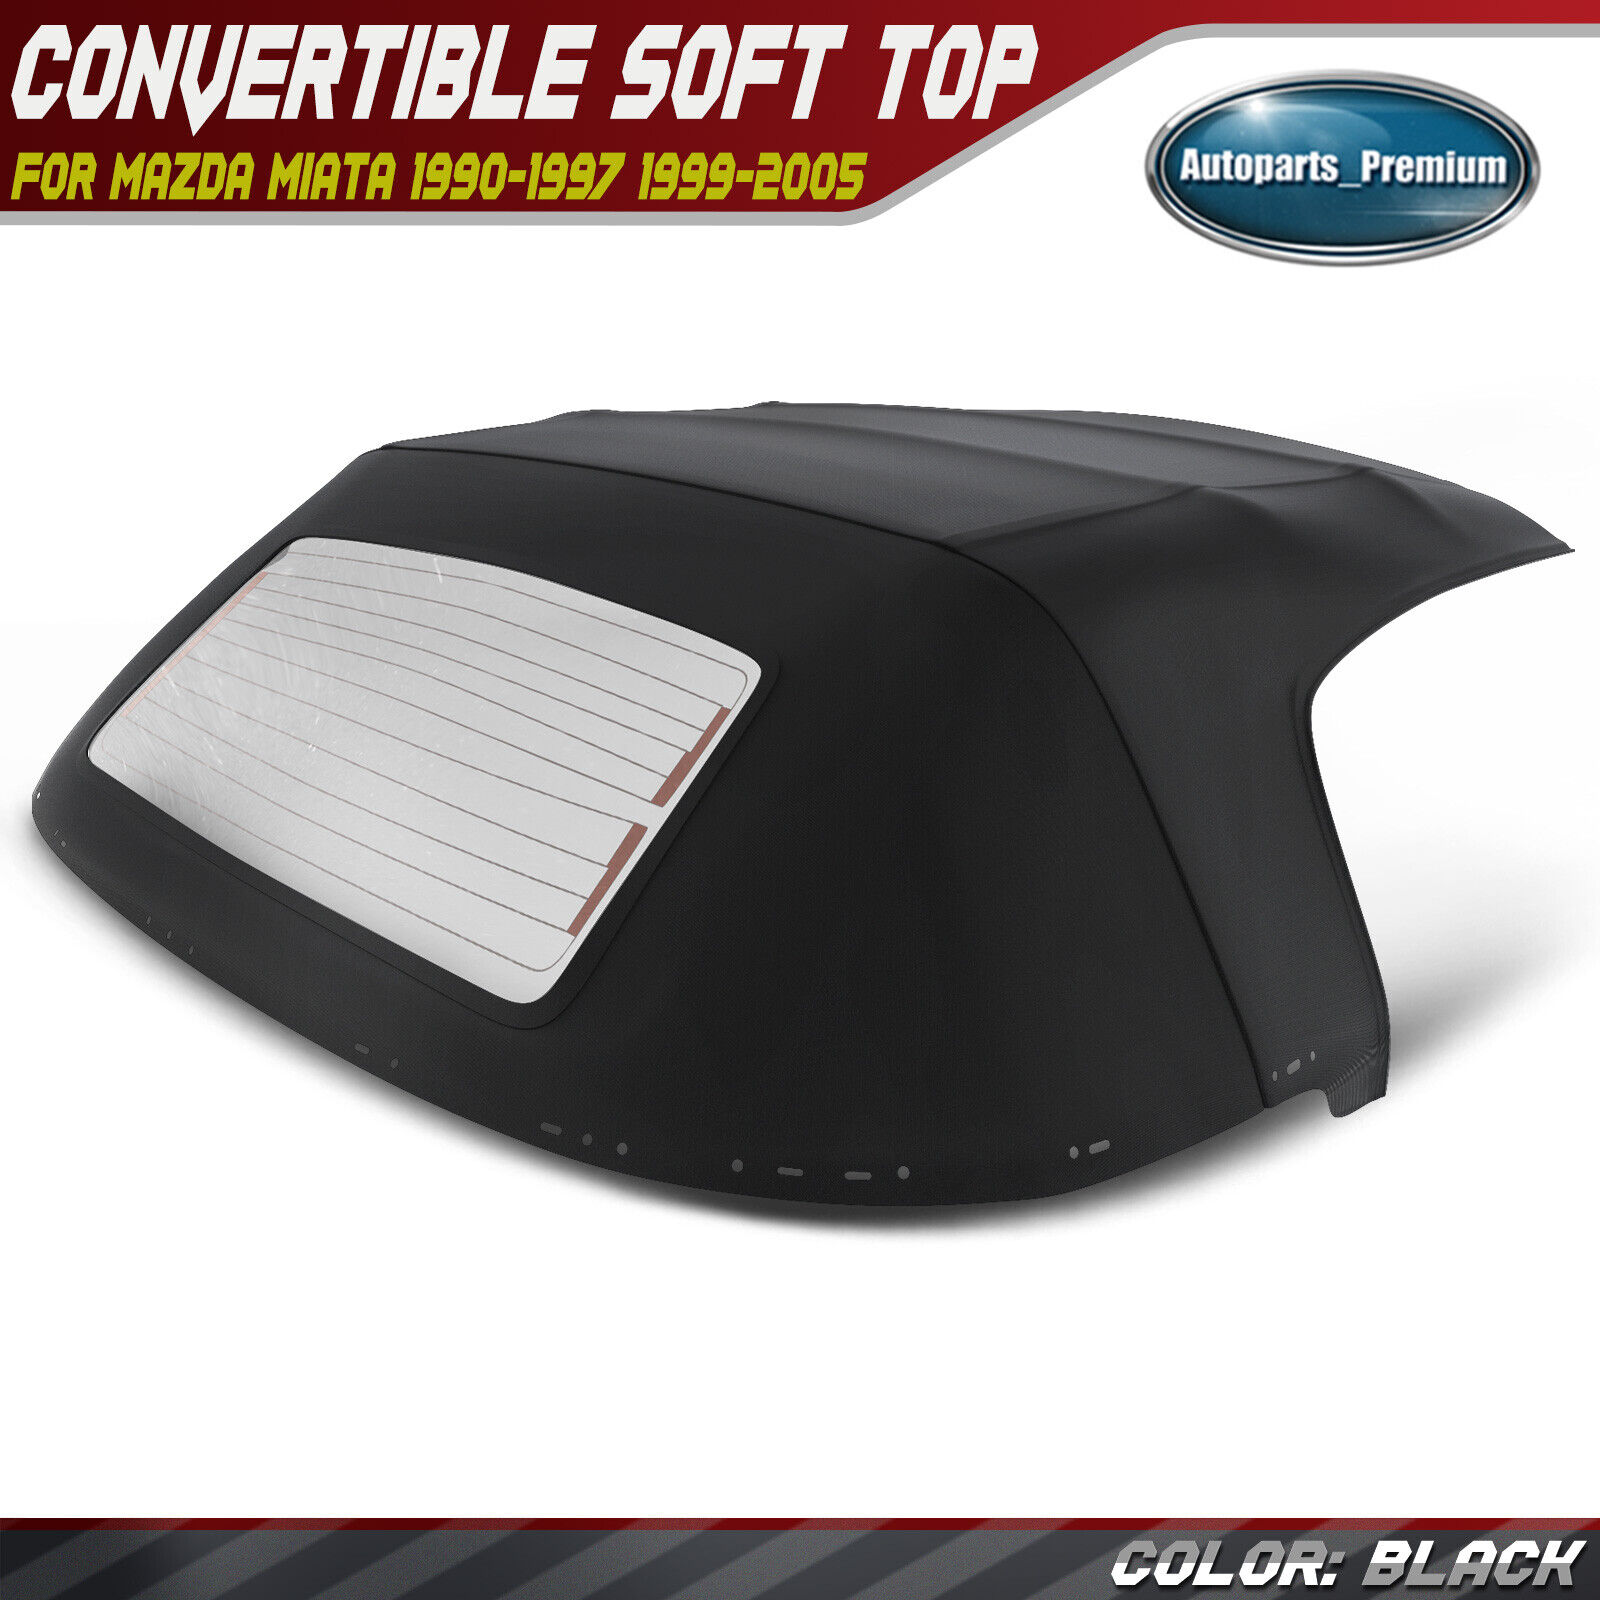 Black Convertible Soft Top for Mazda Miata 1990-1997 1999-2005 w/ Glass Window